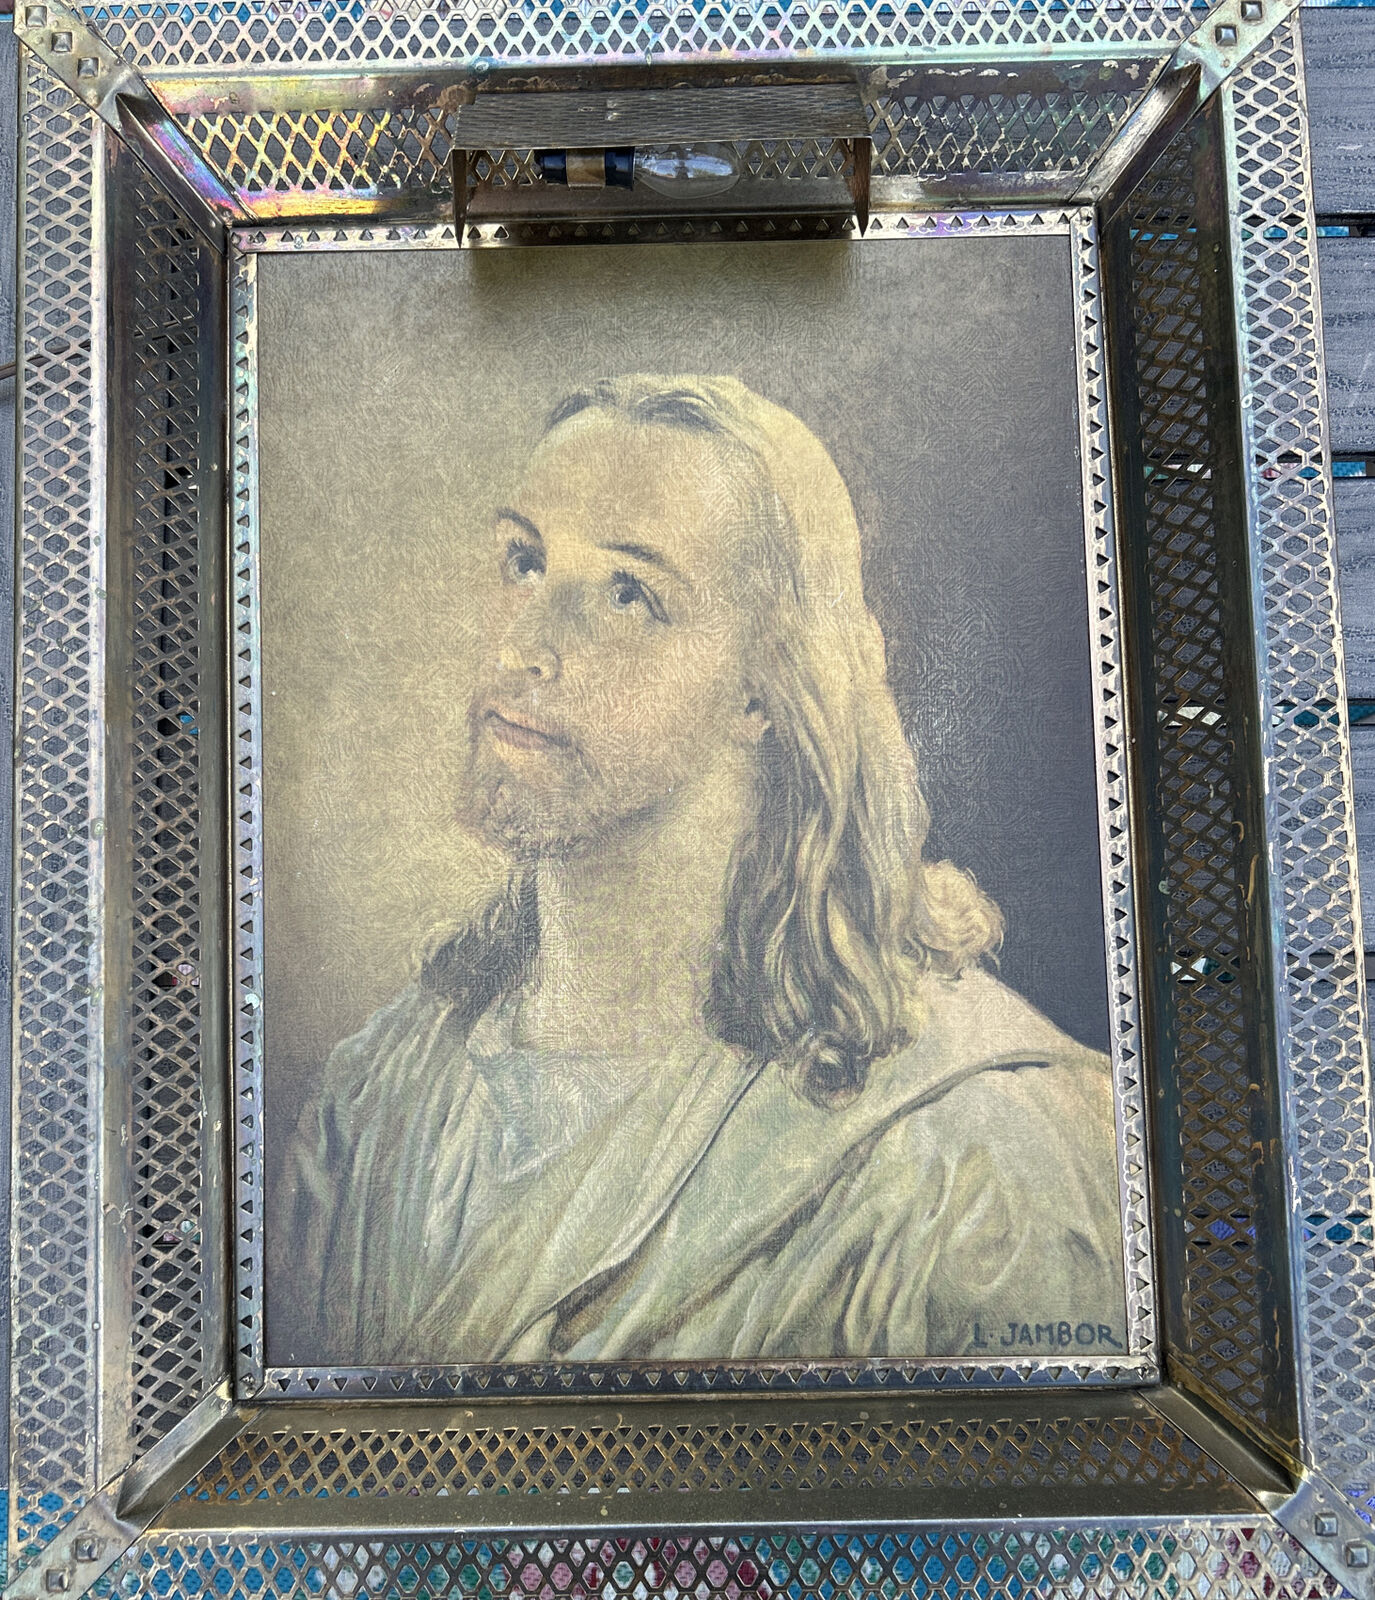 Vintage MCM Lenticular 3D Hologram Jesus Light Up Metal Frame Picture L Jambor